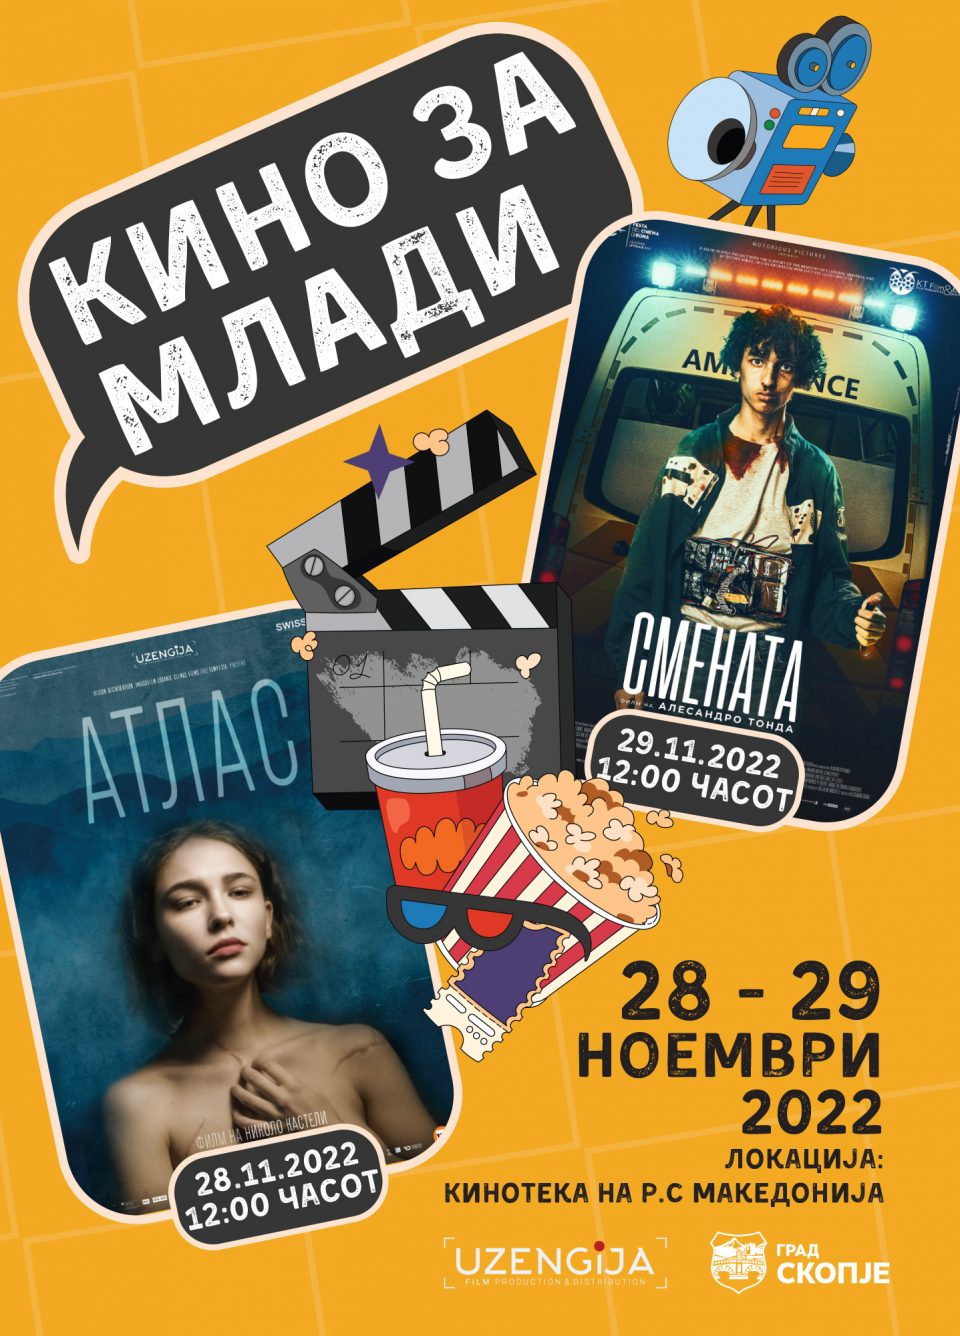 „Кино за млади“ со бесплатни проекции на 28 и 29 ноември во Кинотеката